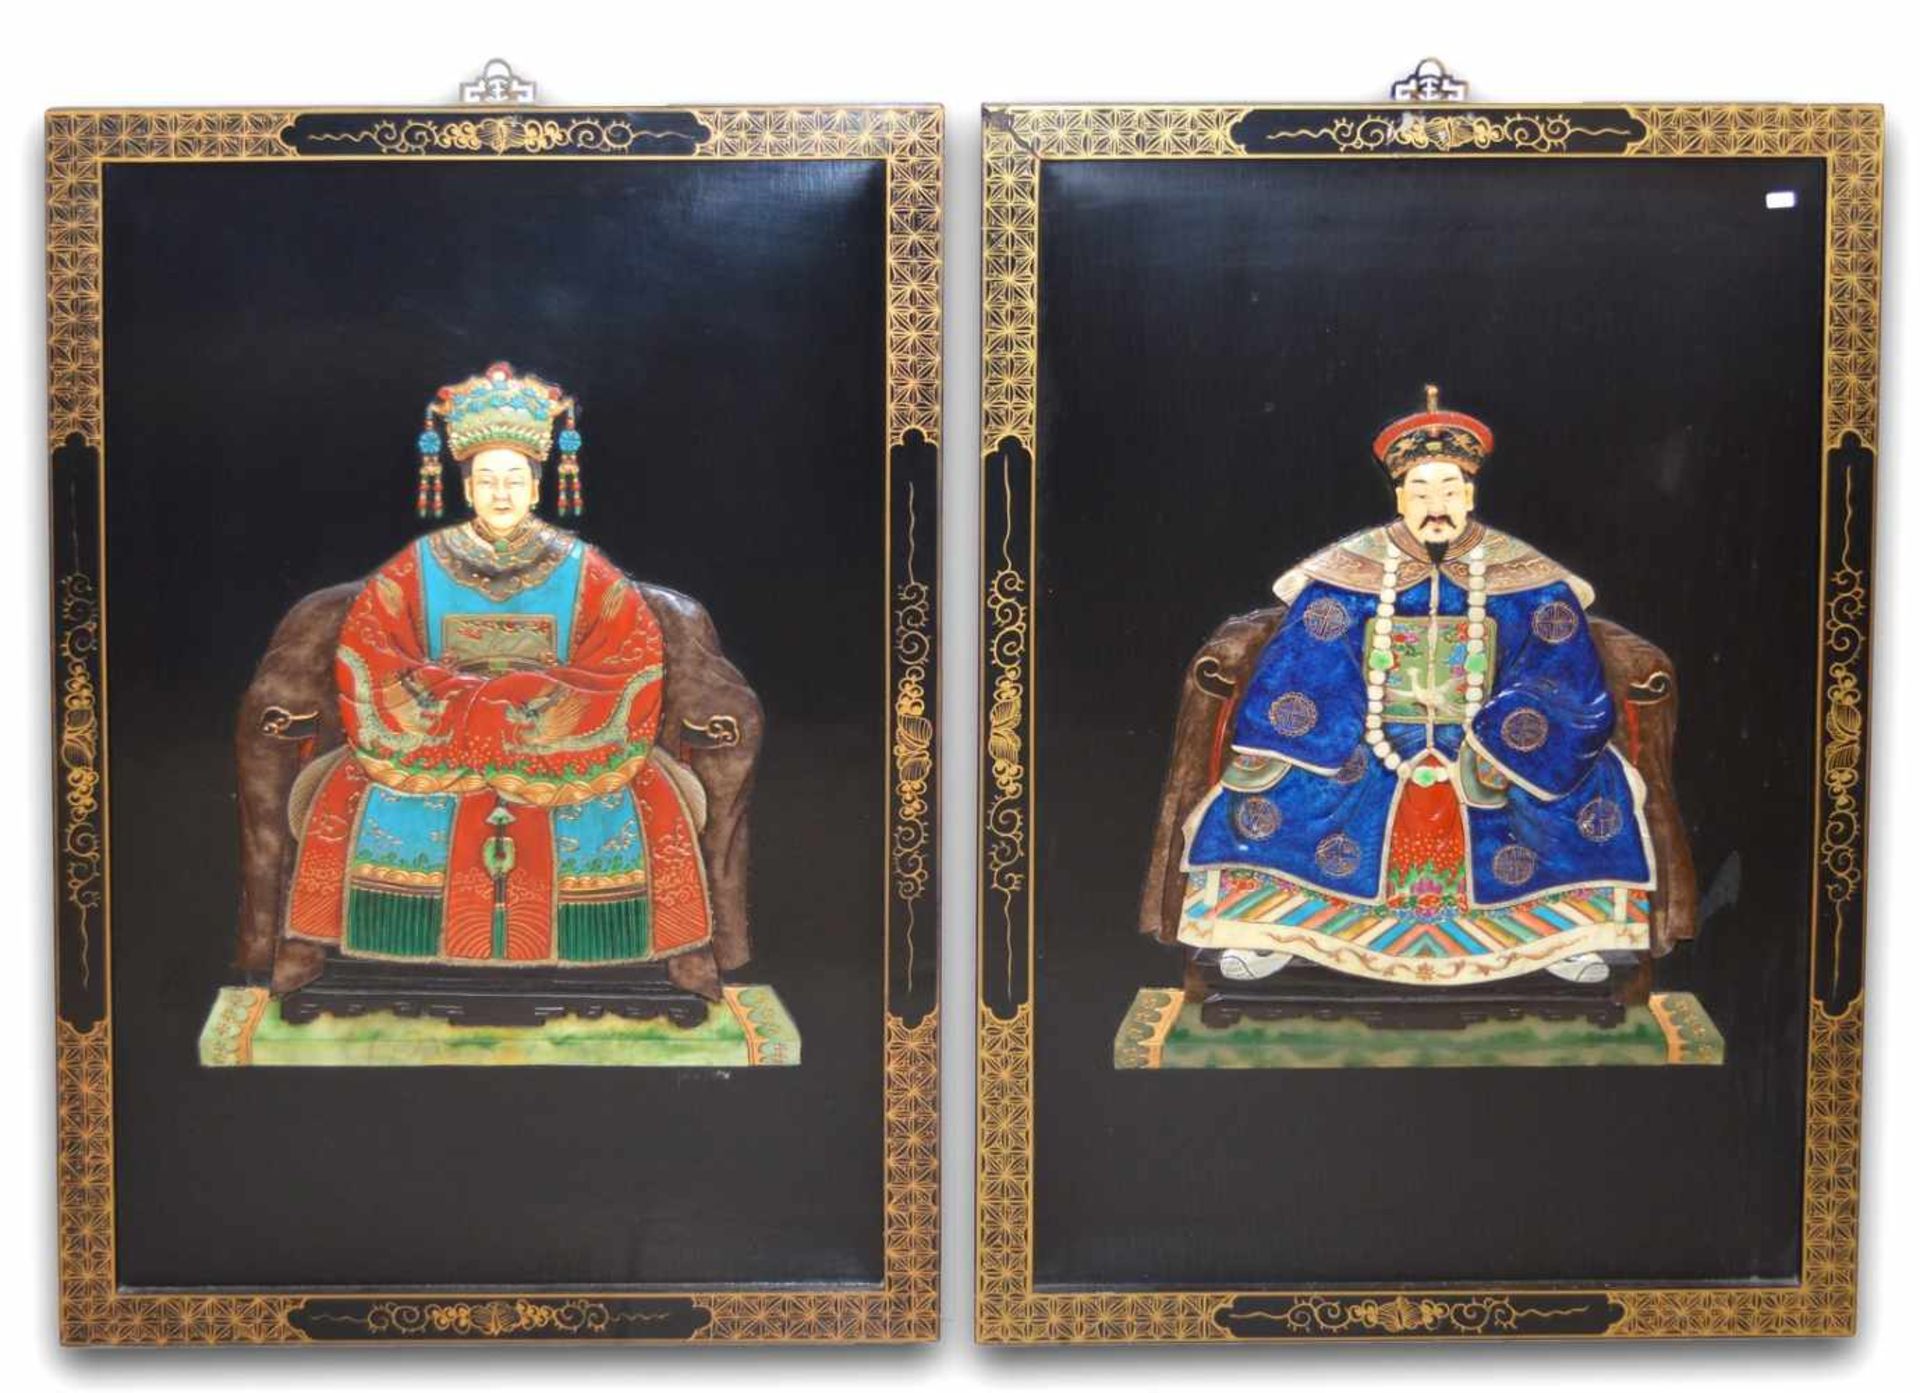 Zwei asiatische Reliefbilderasiatisches Kaiserpaar, Hartholz, geschnitzt, bunt bemalt,